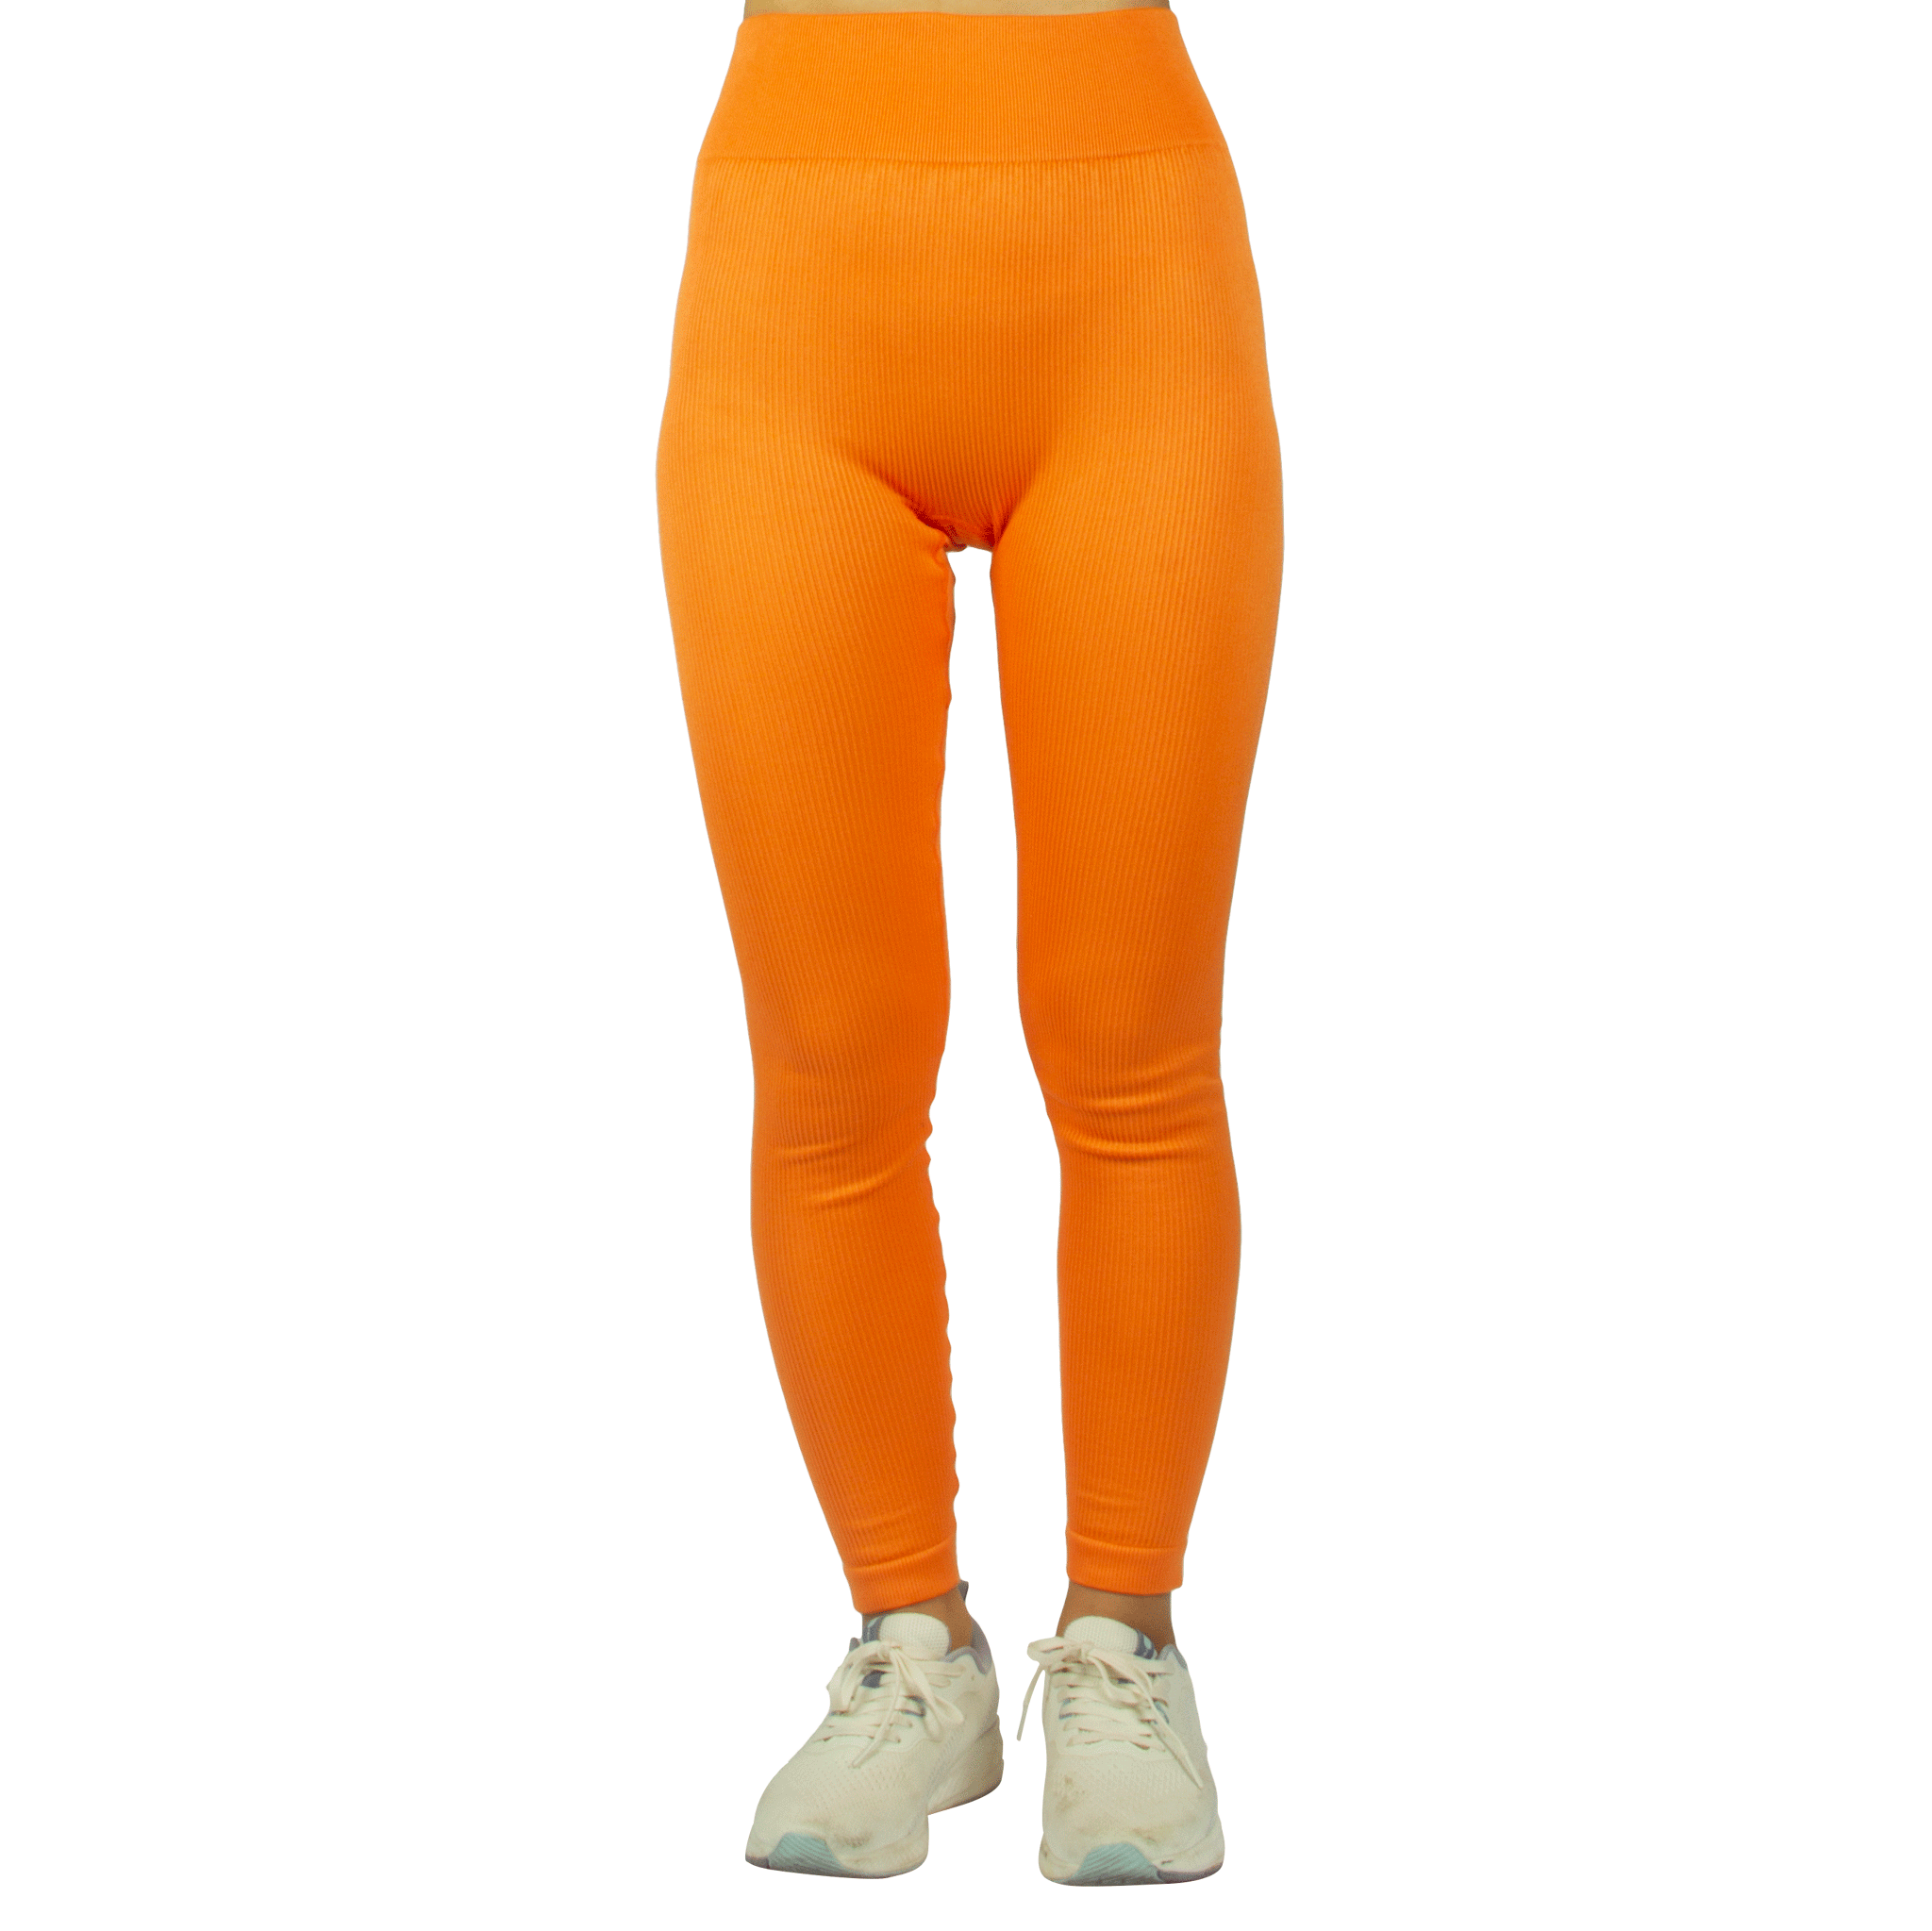 Pantalóns leggings deportivos elásticos para mulleres